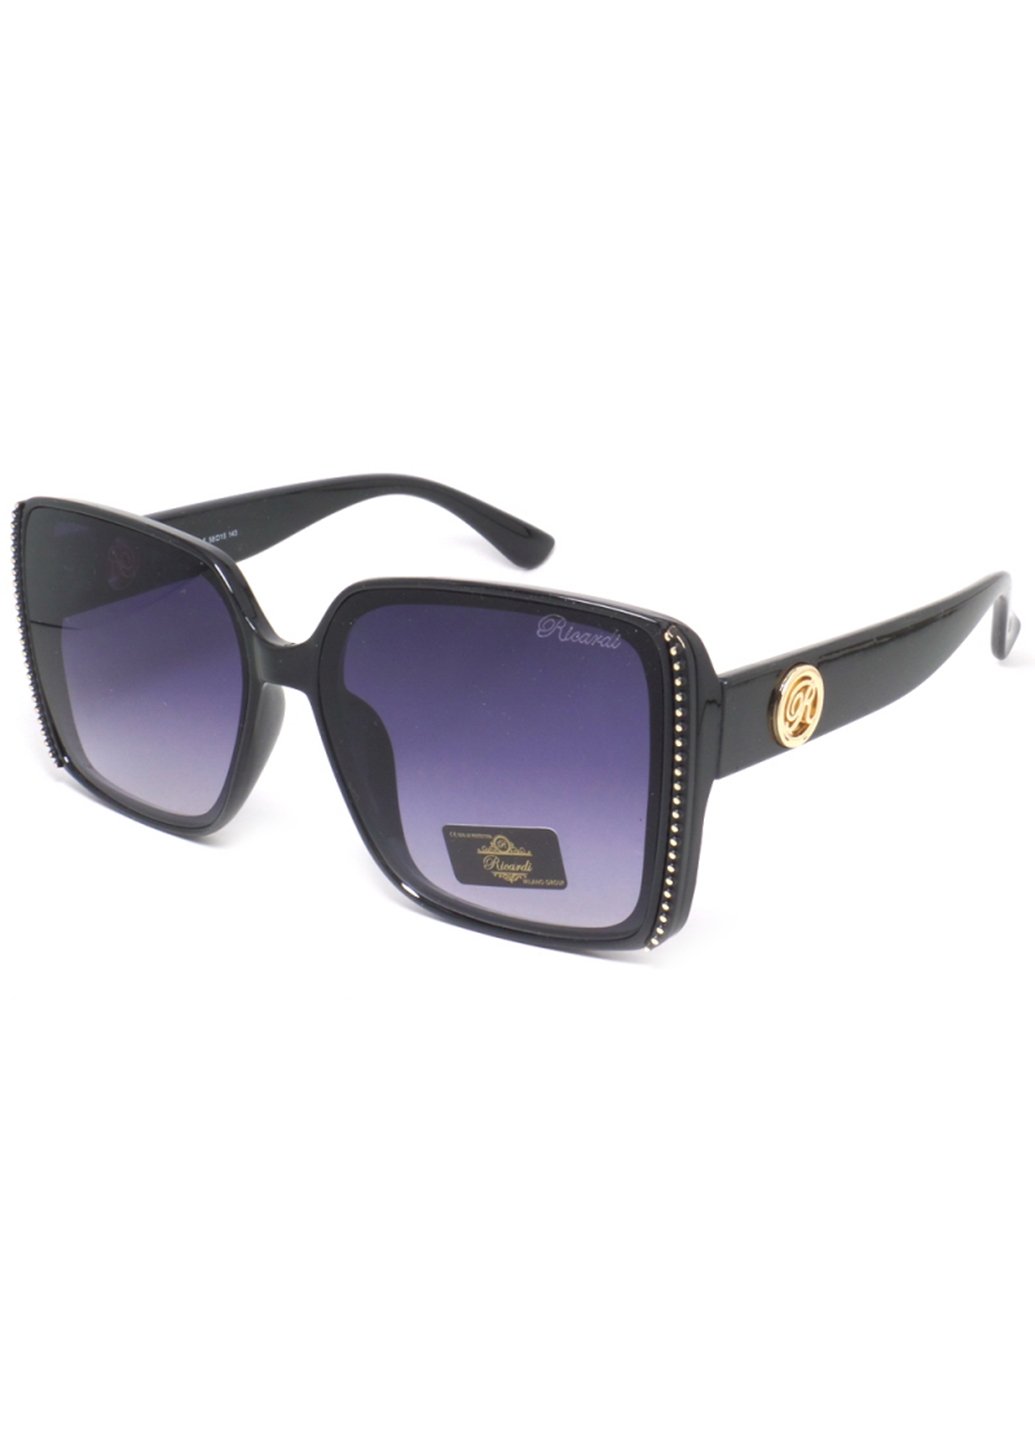 Купить Женские солнцезащитные очки Ricardi RC0139 110004 - Черный в интернет-магазине